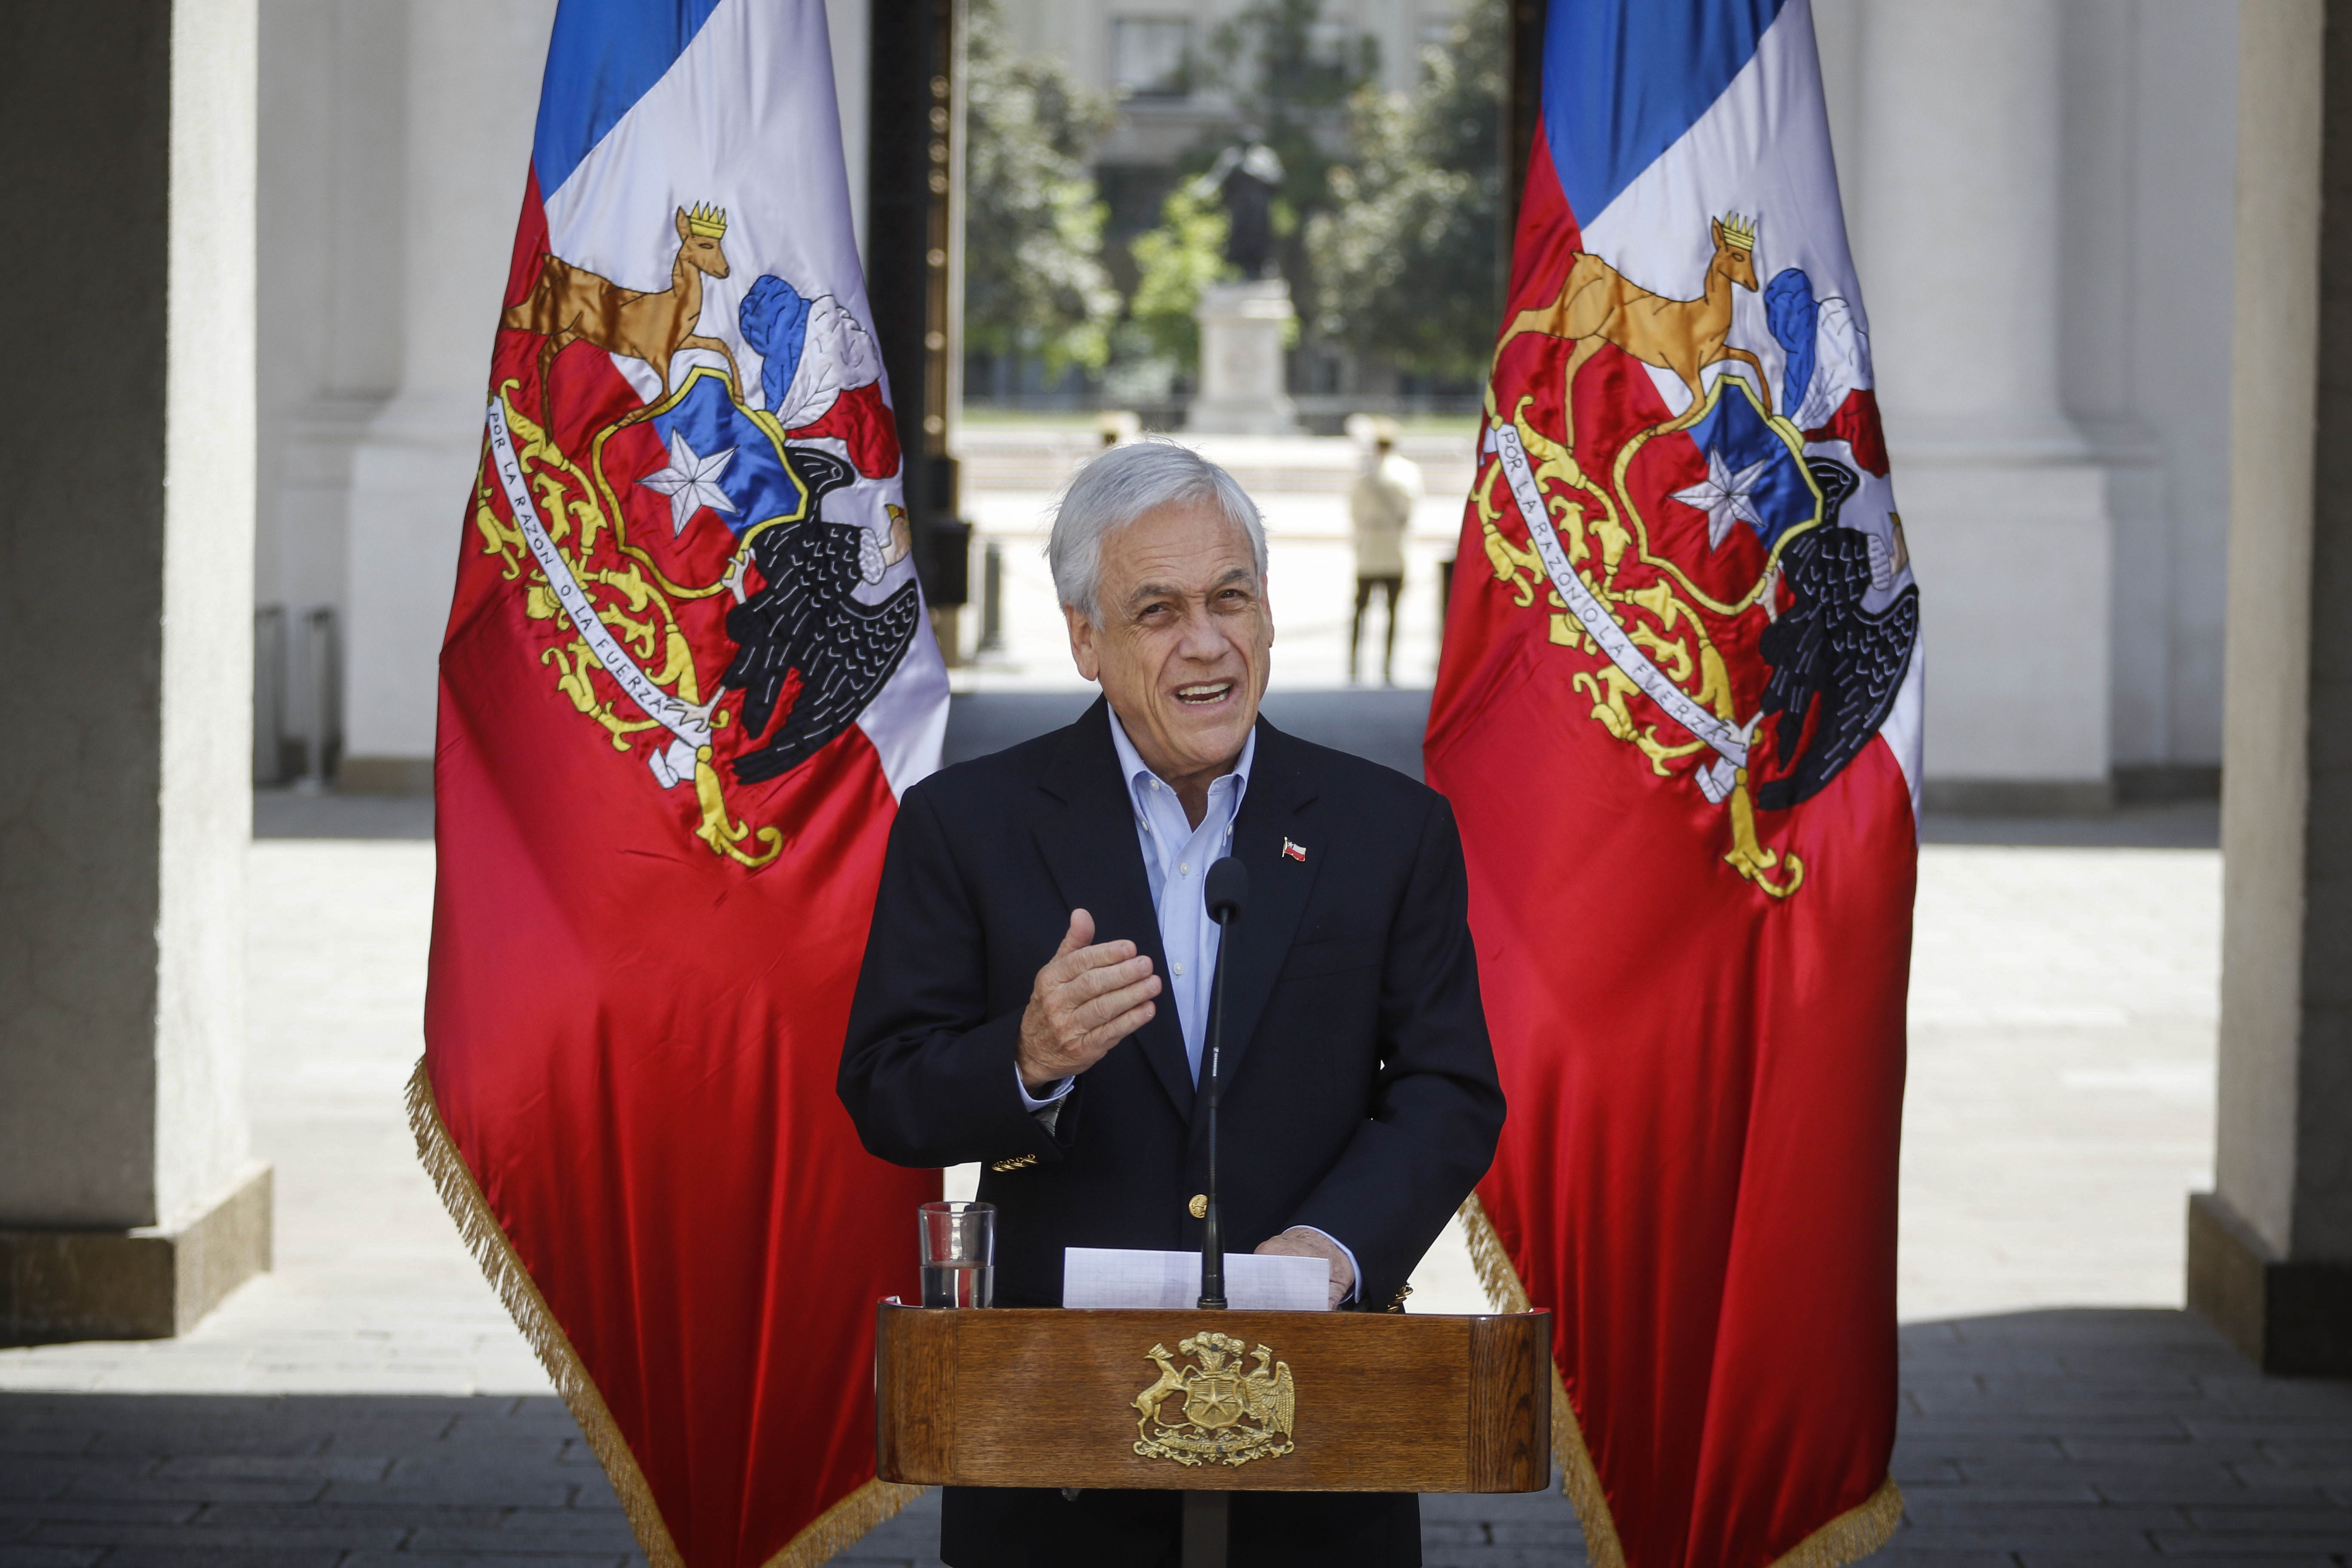 El Mandatario habló de la situación en Chili tras el estallido social